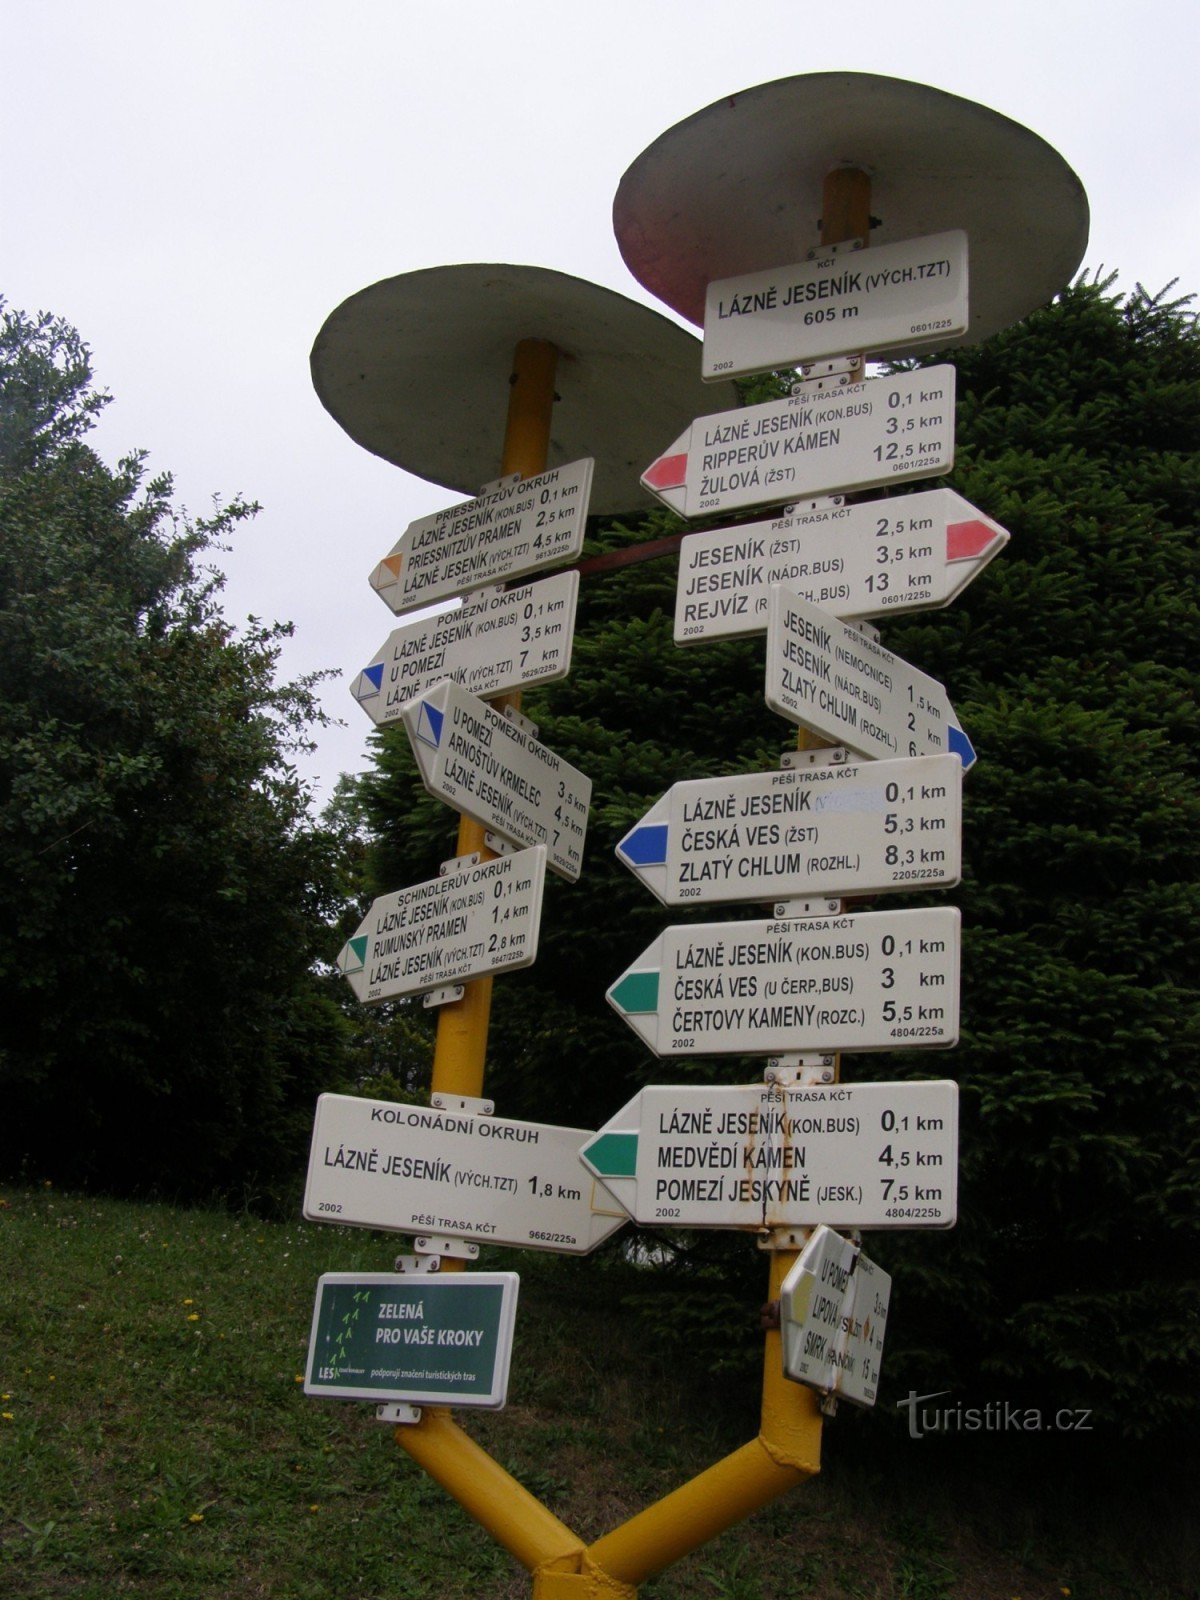 Spa Jeseník - the main tourist signpost